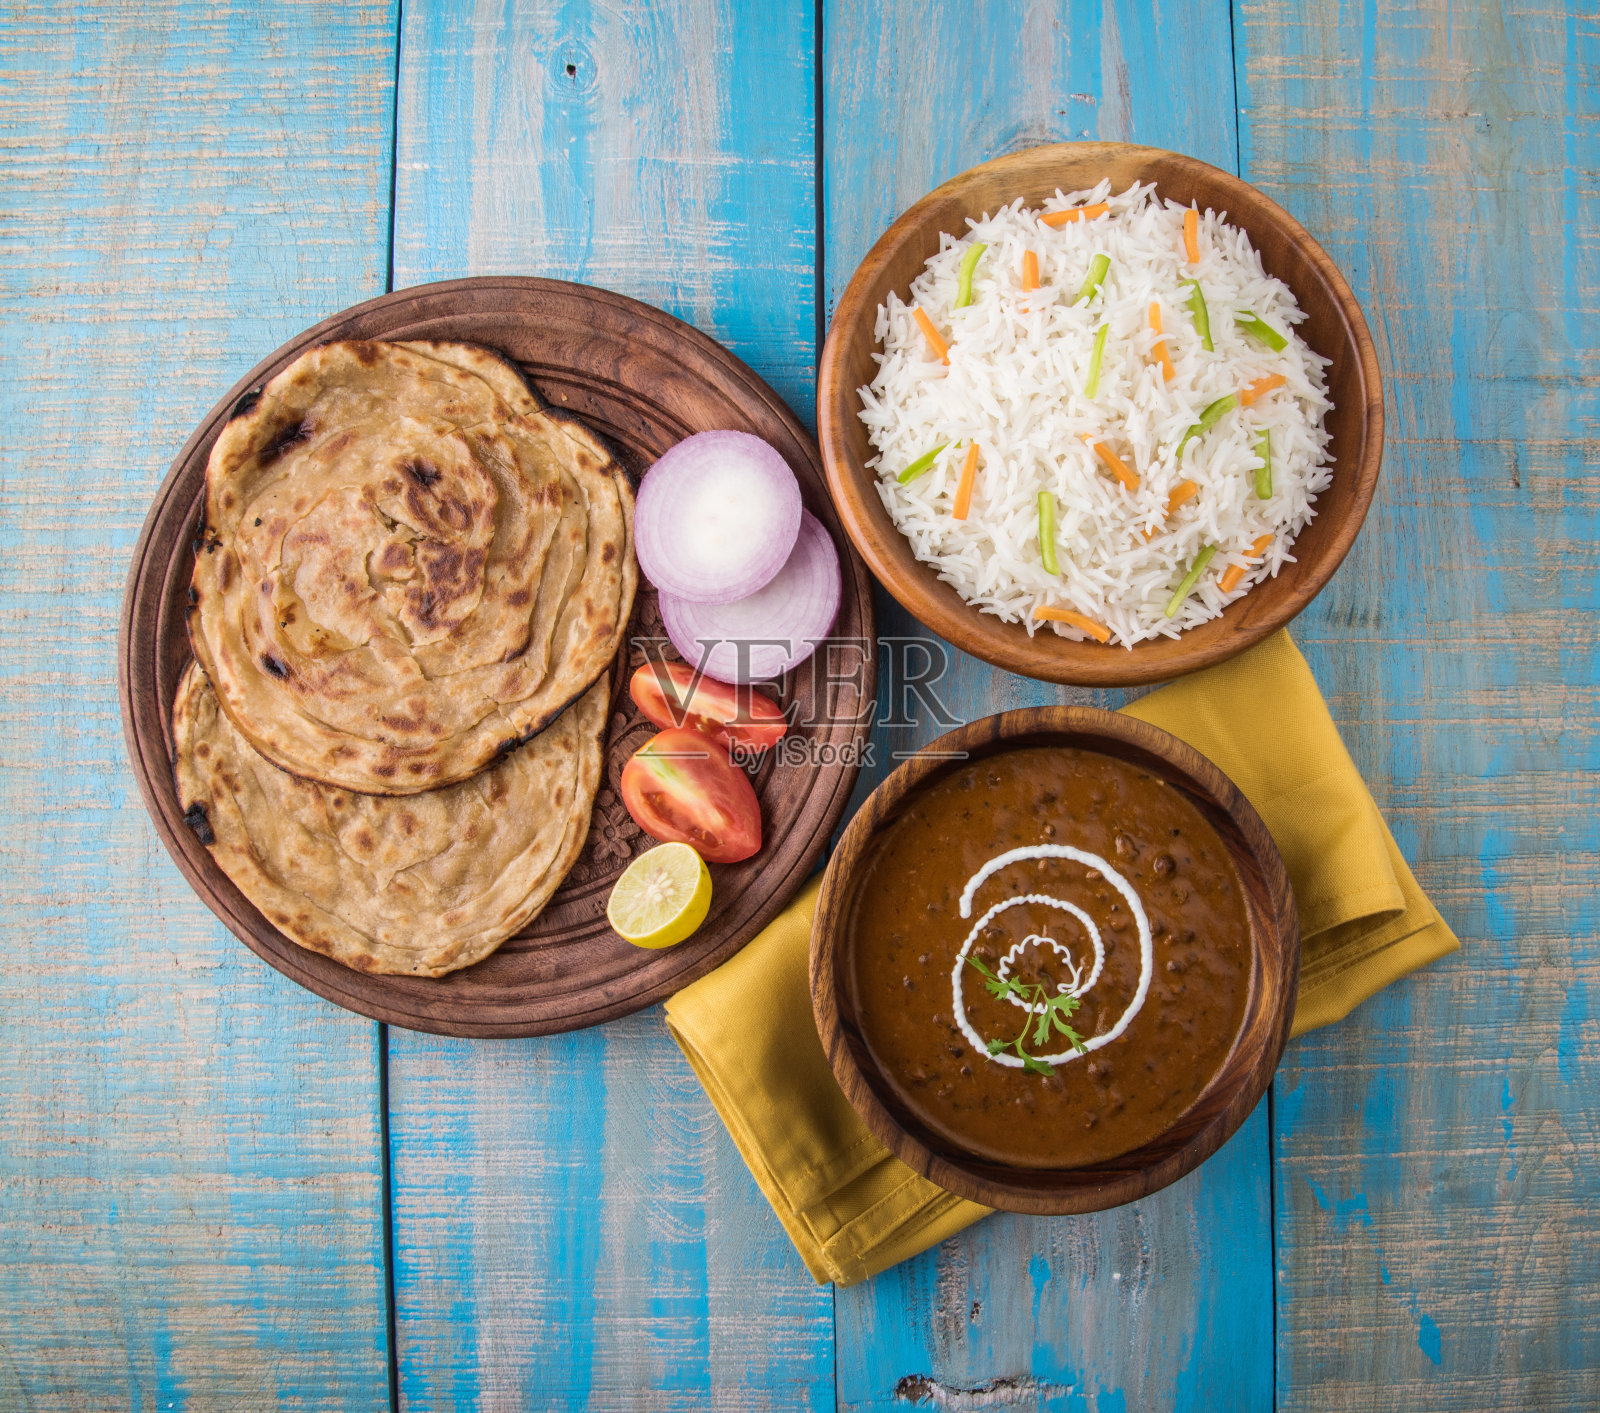 达尔·马哈尼或达尔·马哈尼，印度午餐/晚餐菜单照片摄影图片